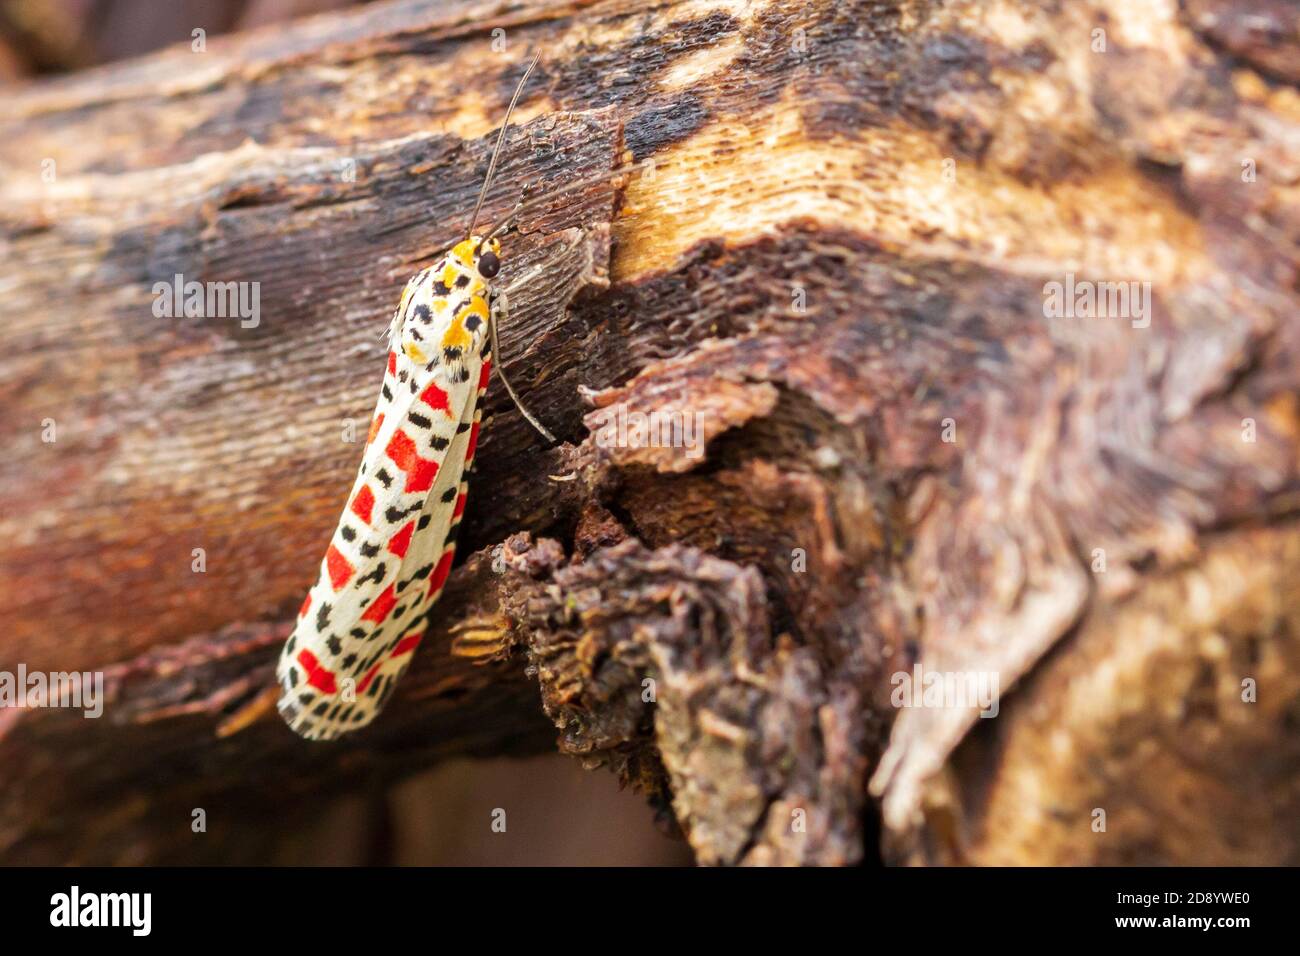 Utetheisa pulchella, Crimson speckled moth Stock Photo